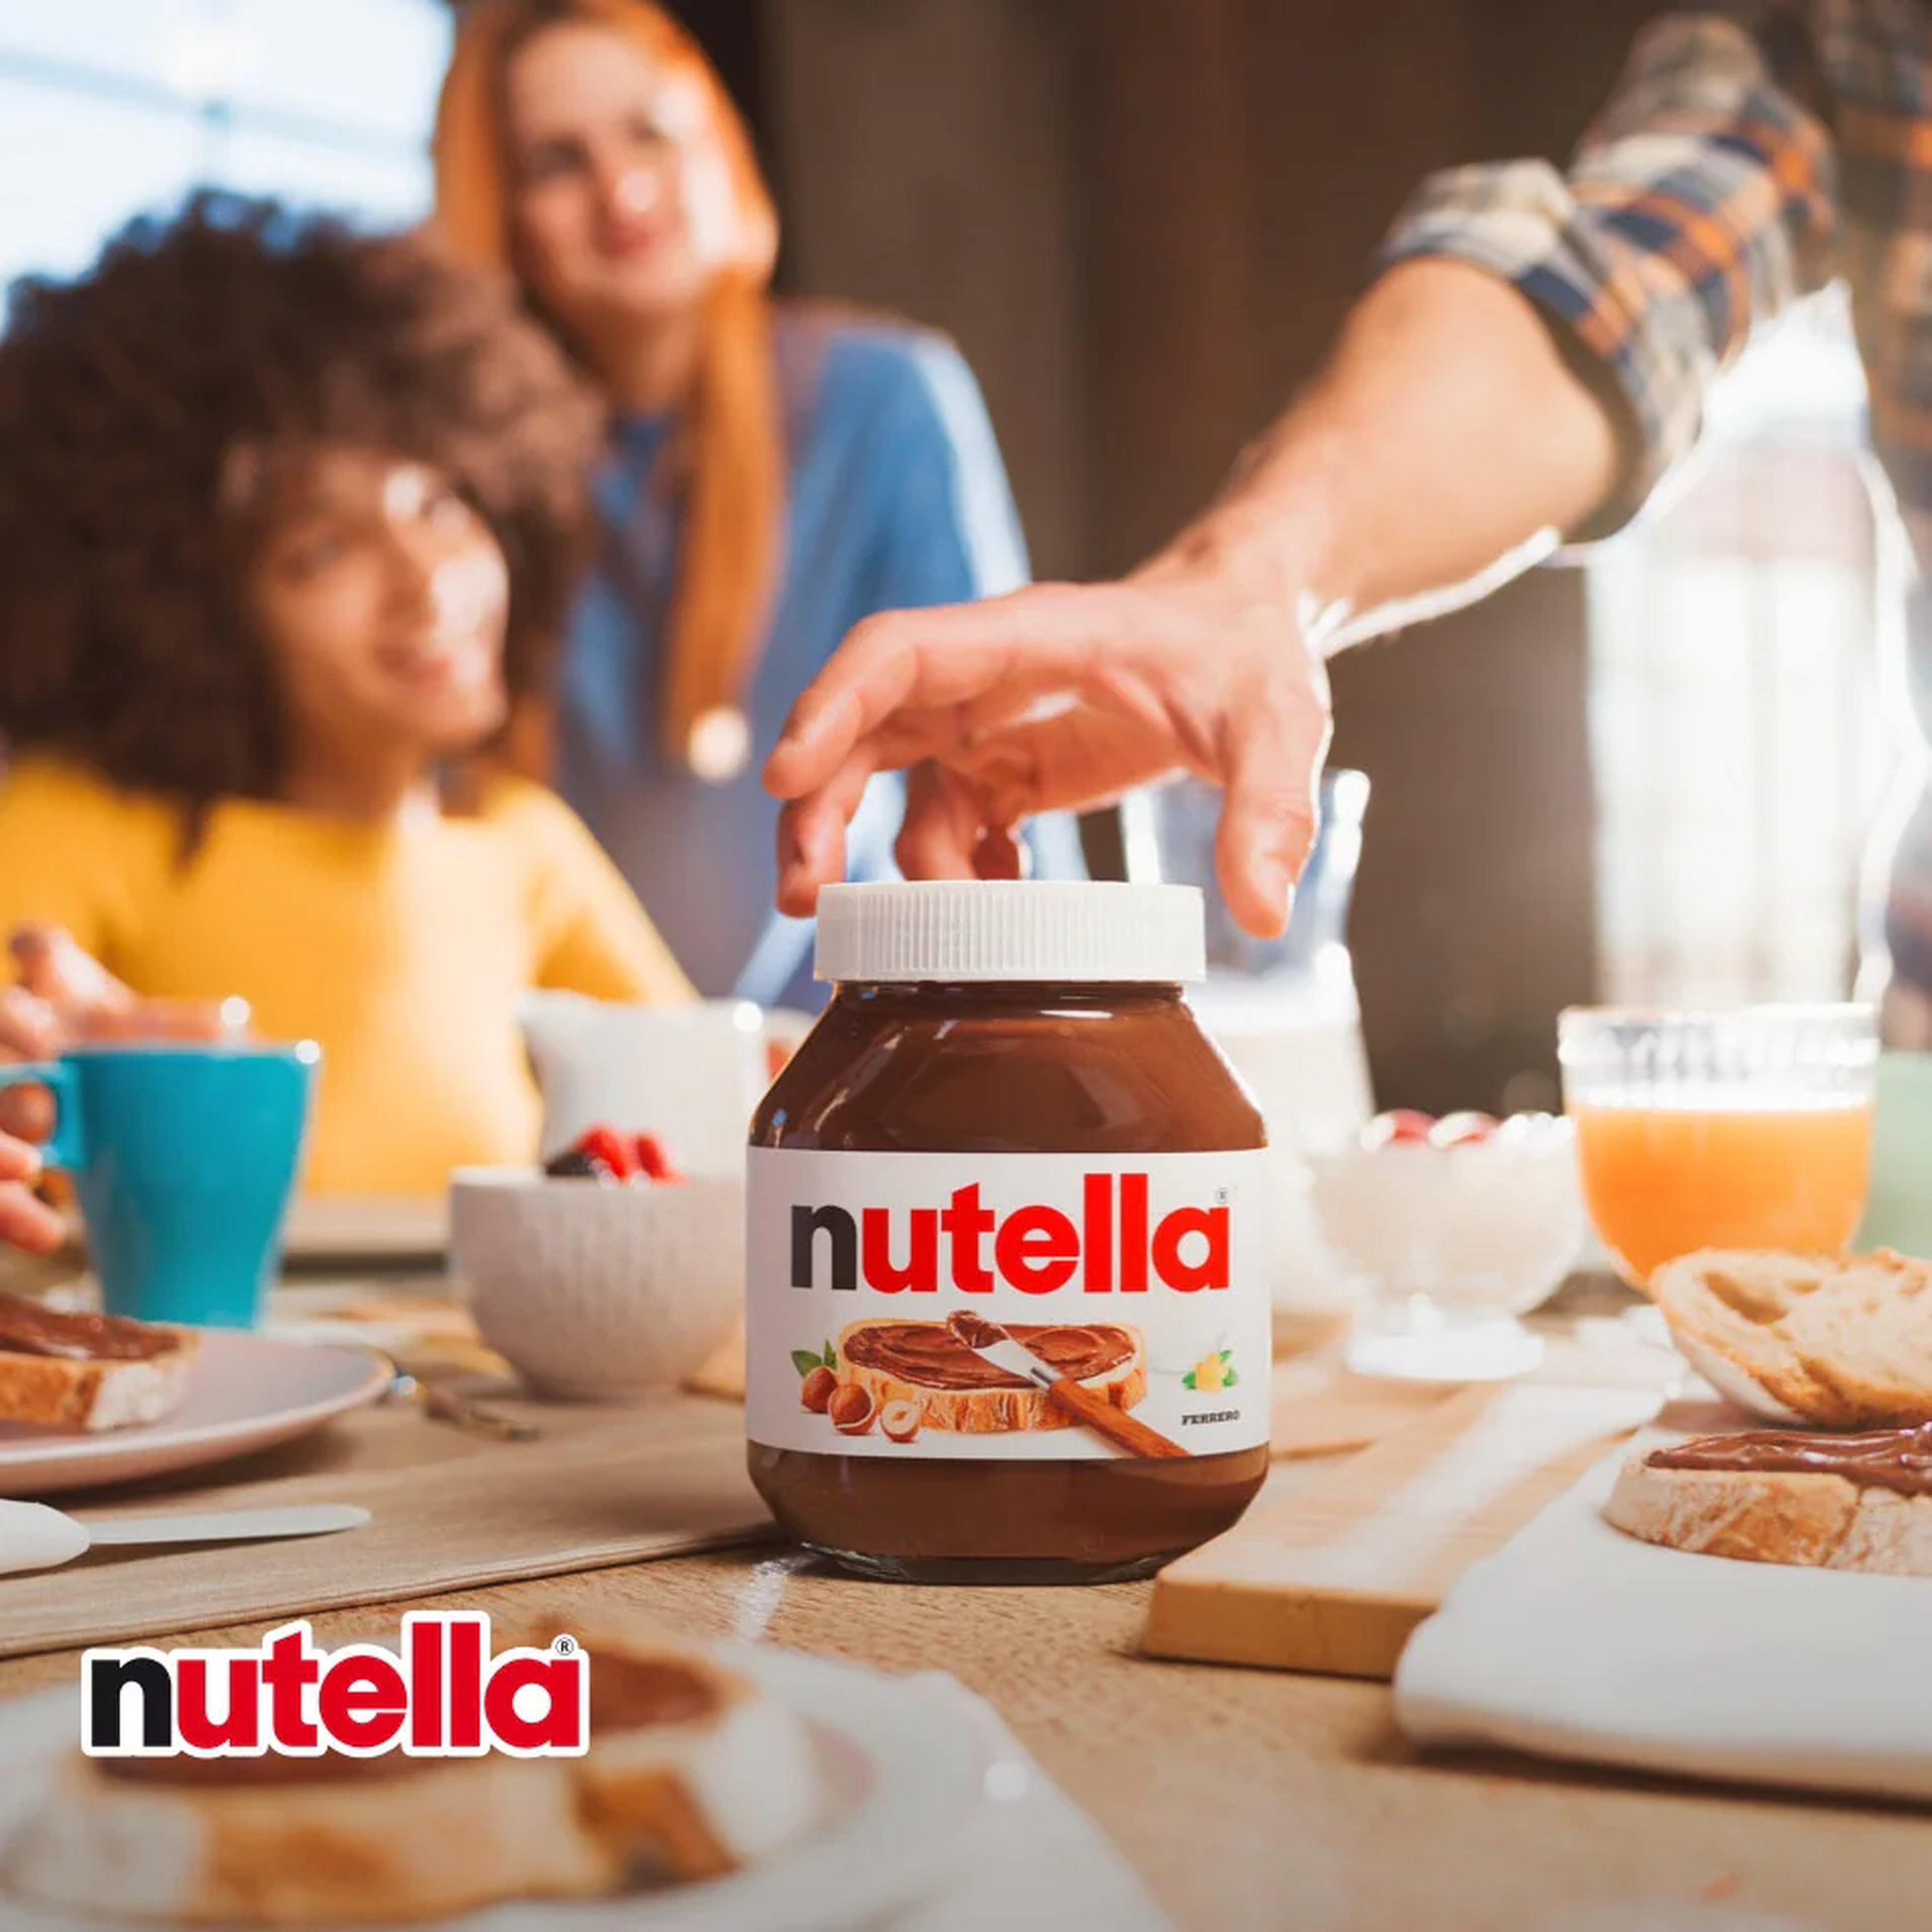 Imagen corporativa de un desayuno con Nutella.